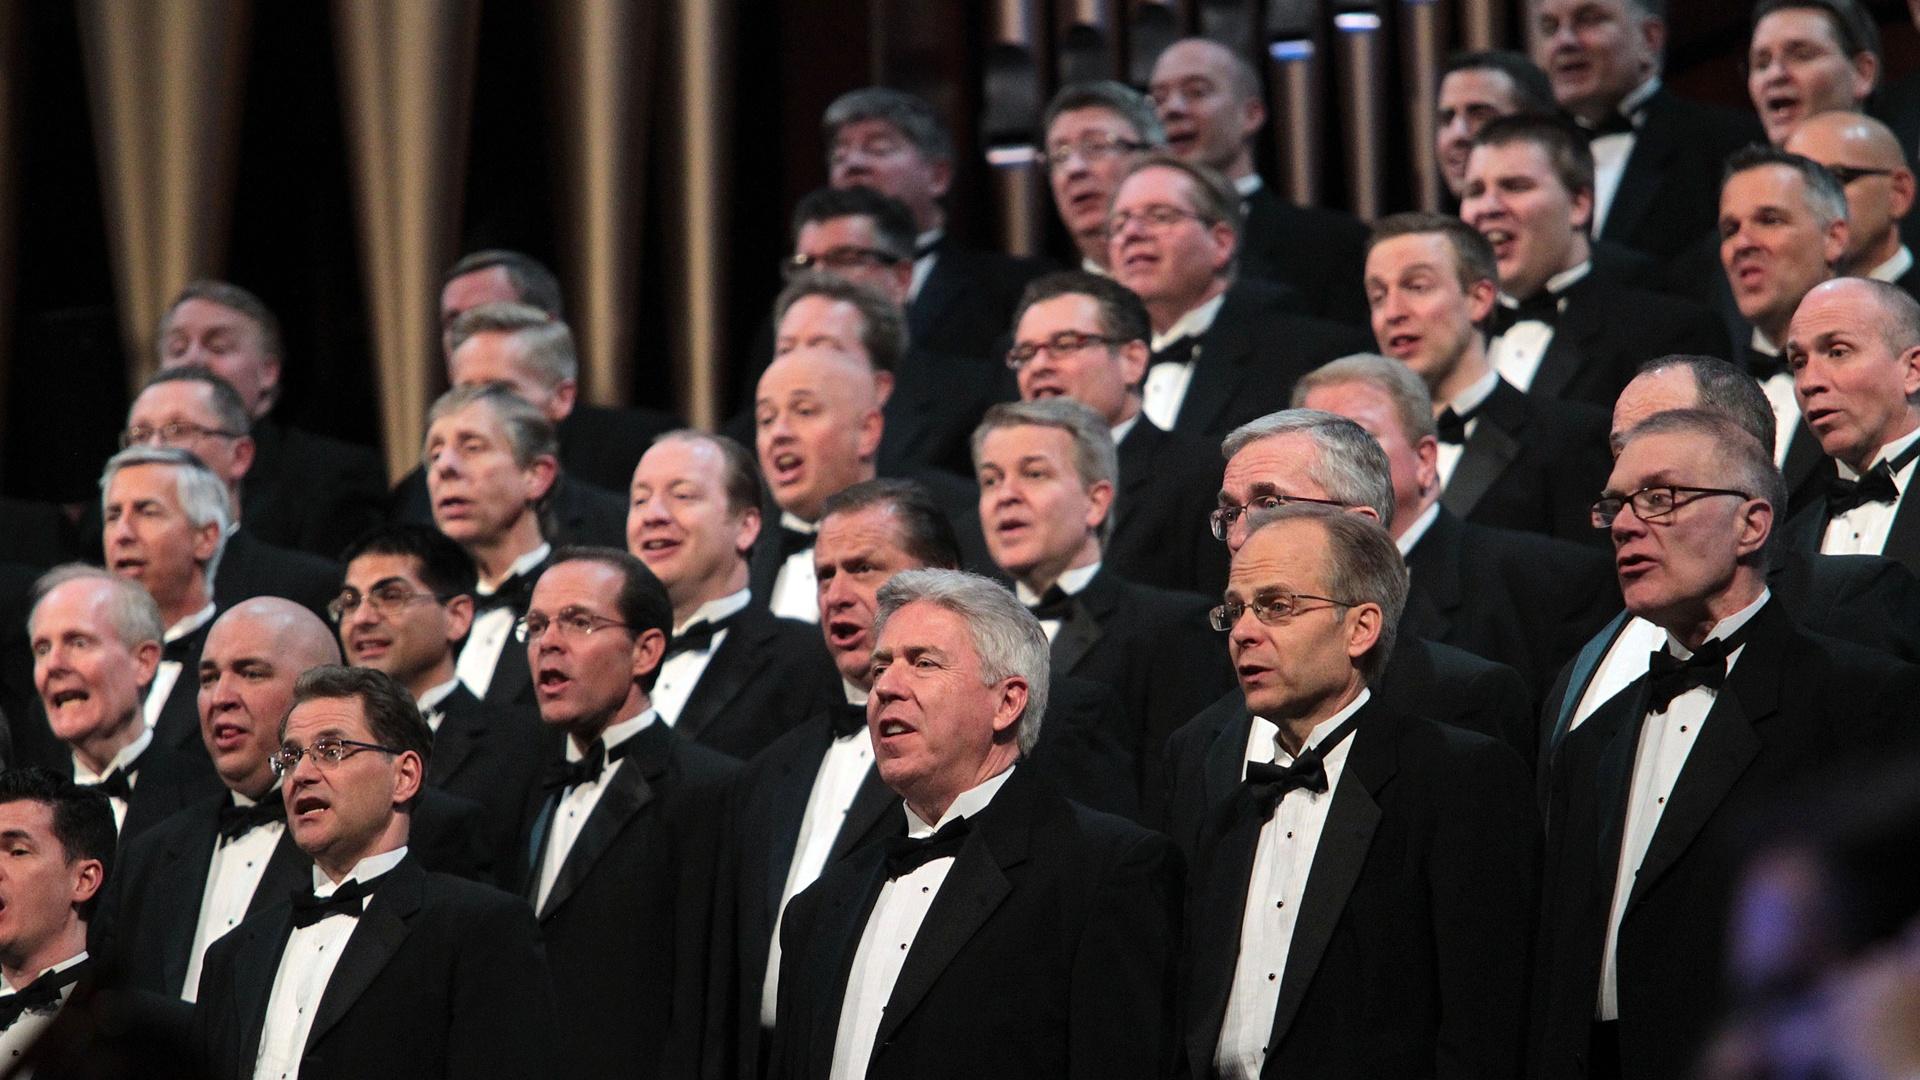 Male members of The Tabernacle Choir singing.